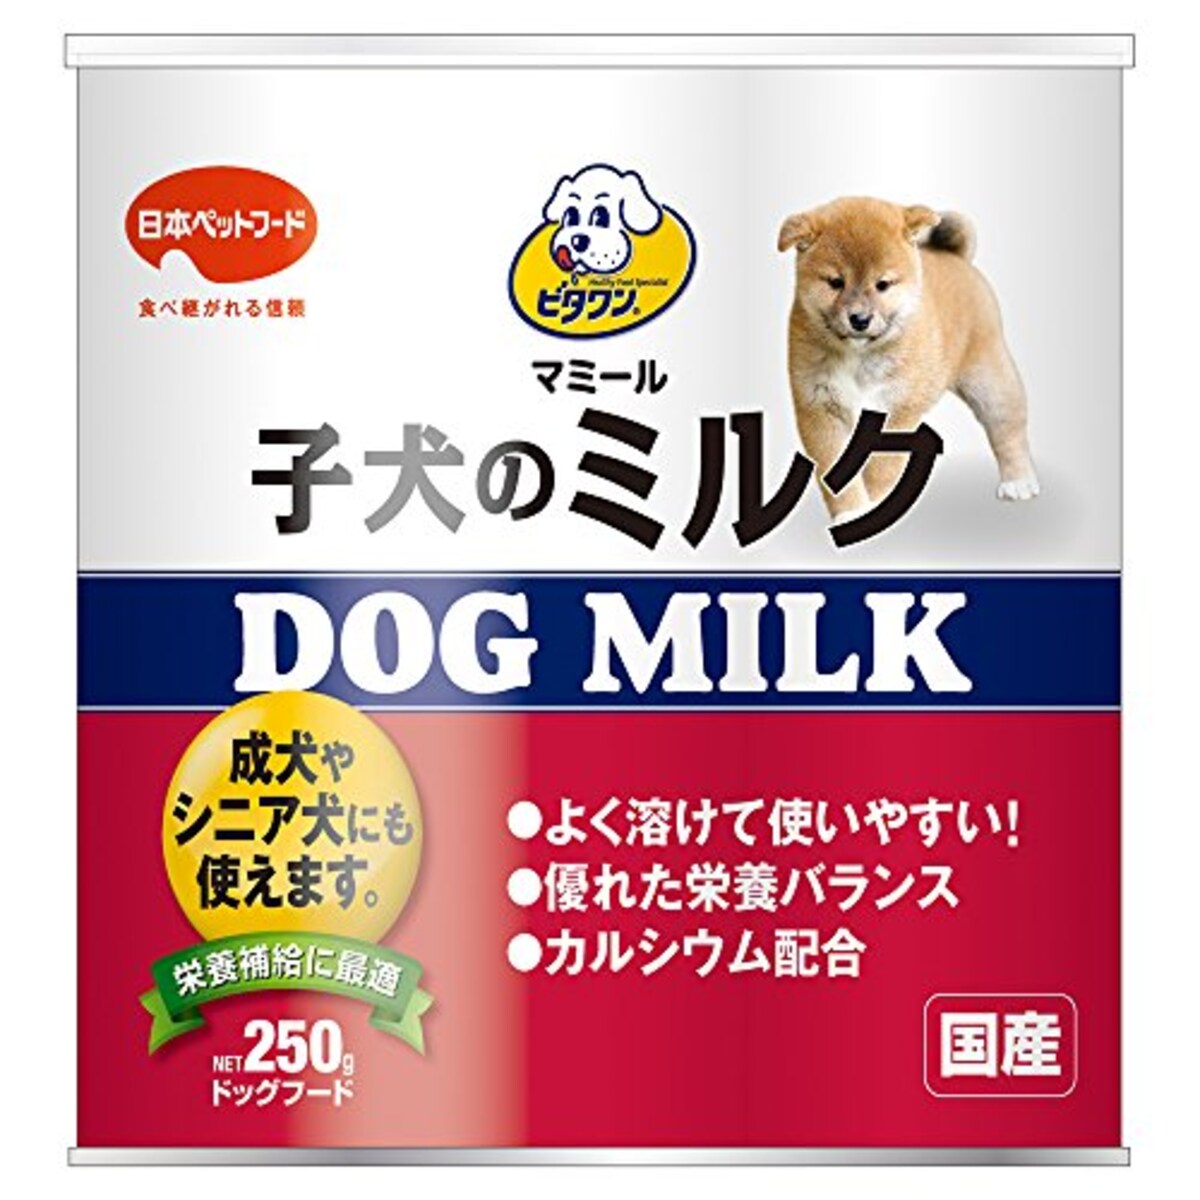 マミール 子犬のミルク